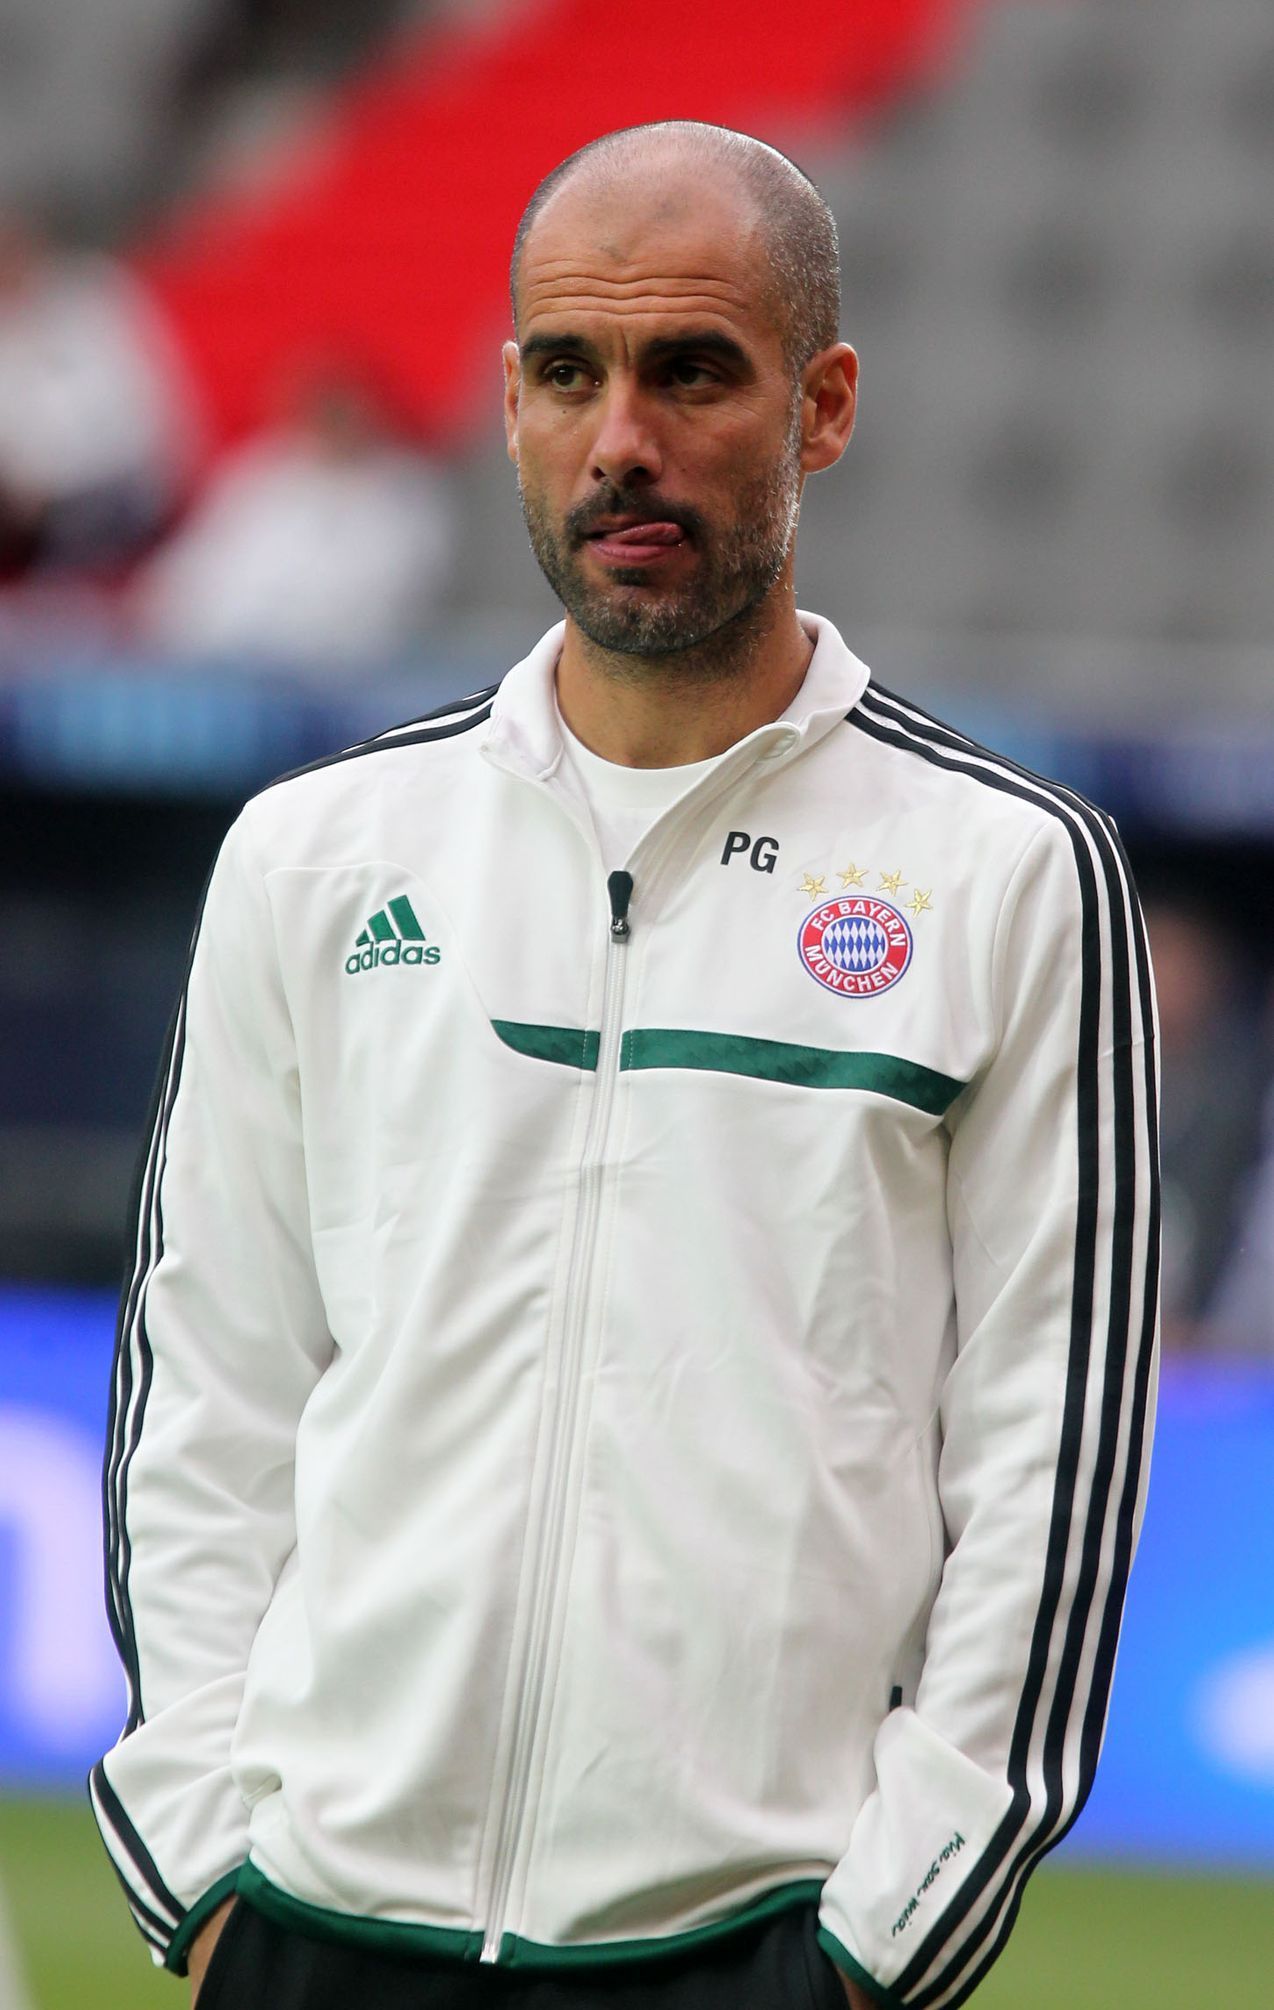 Trénink Bayernu před superpohárem v Praze